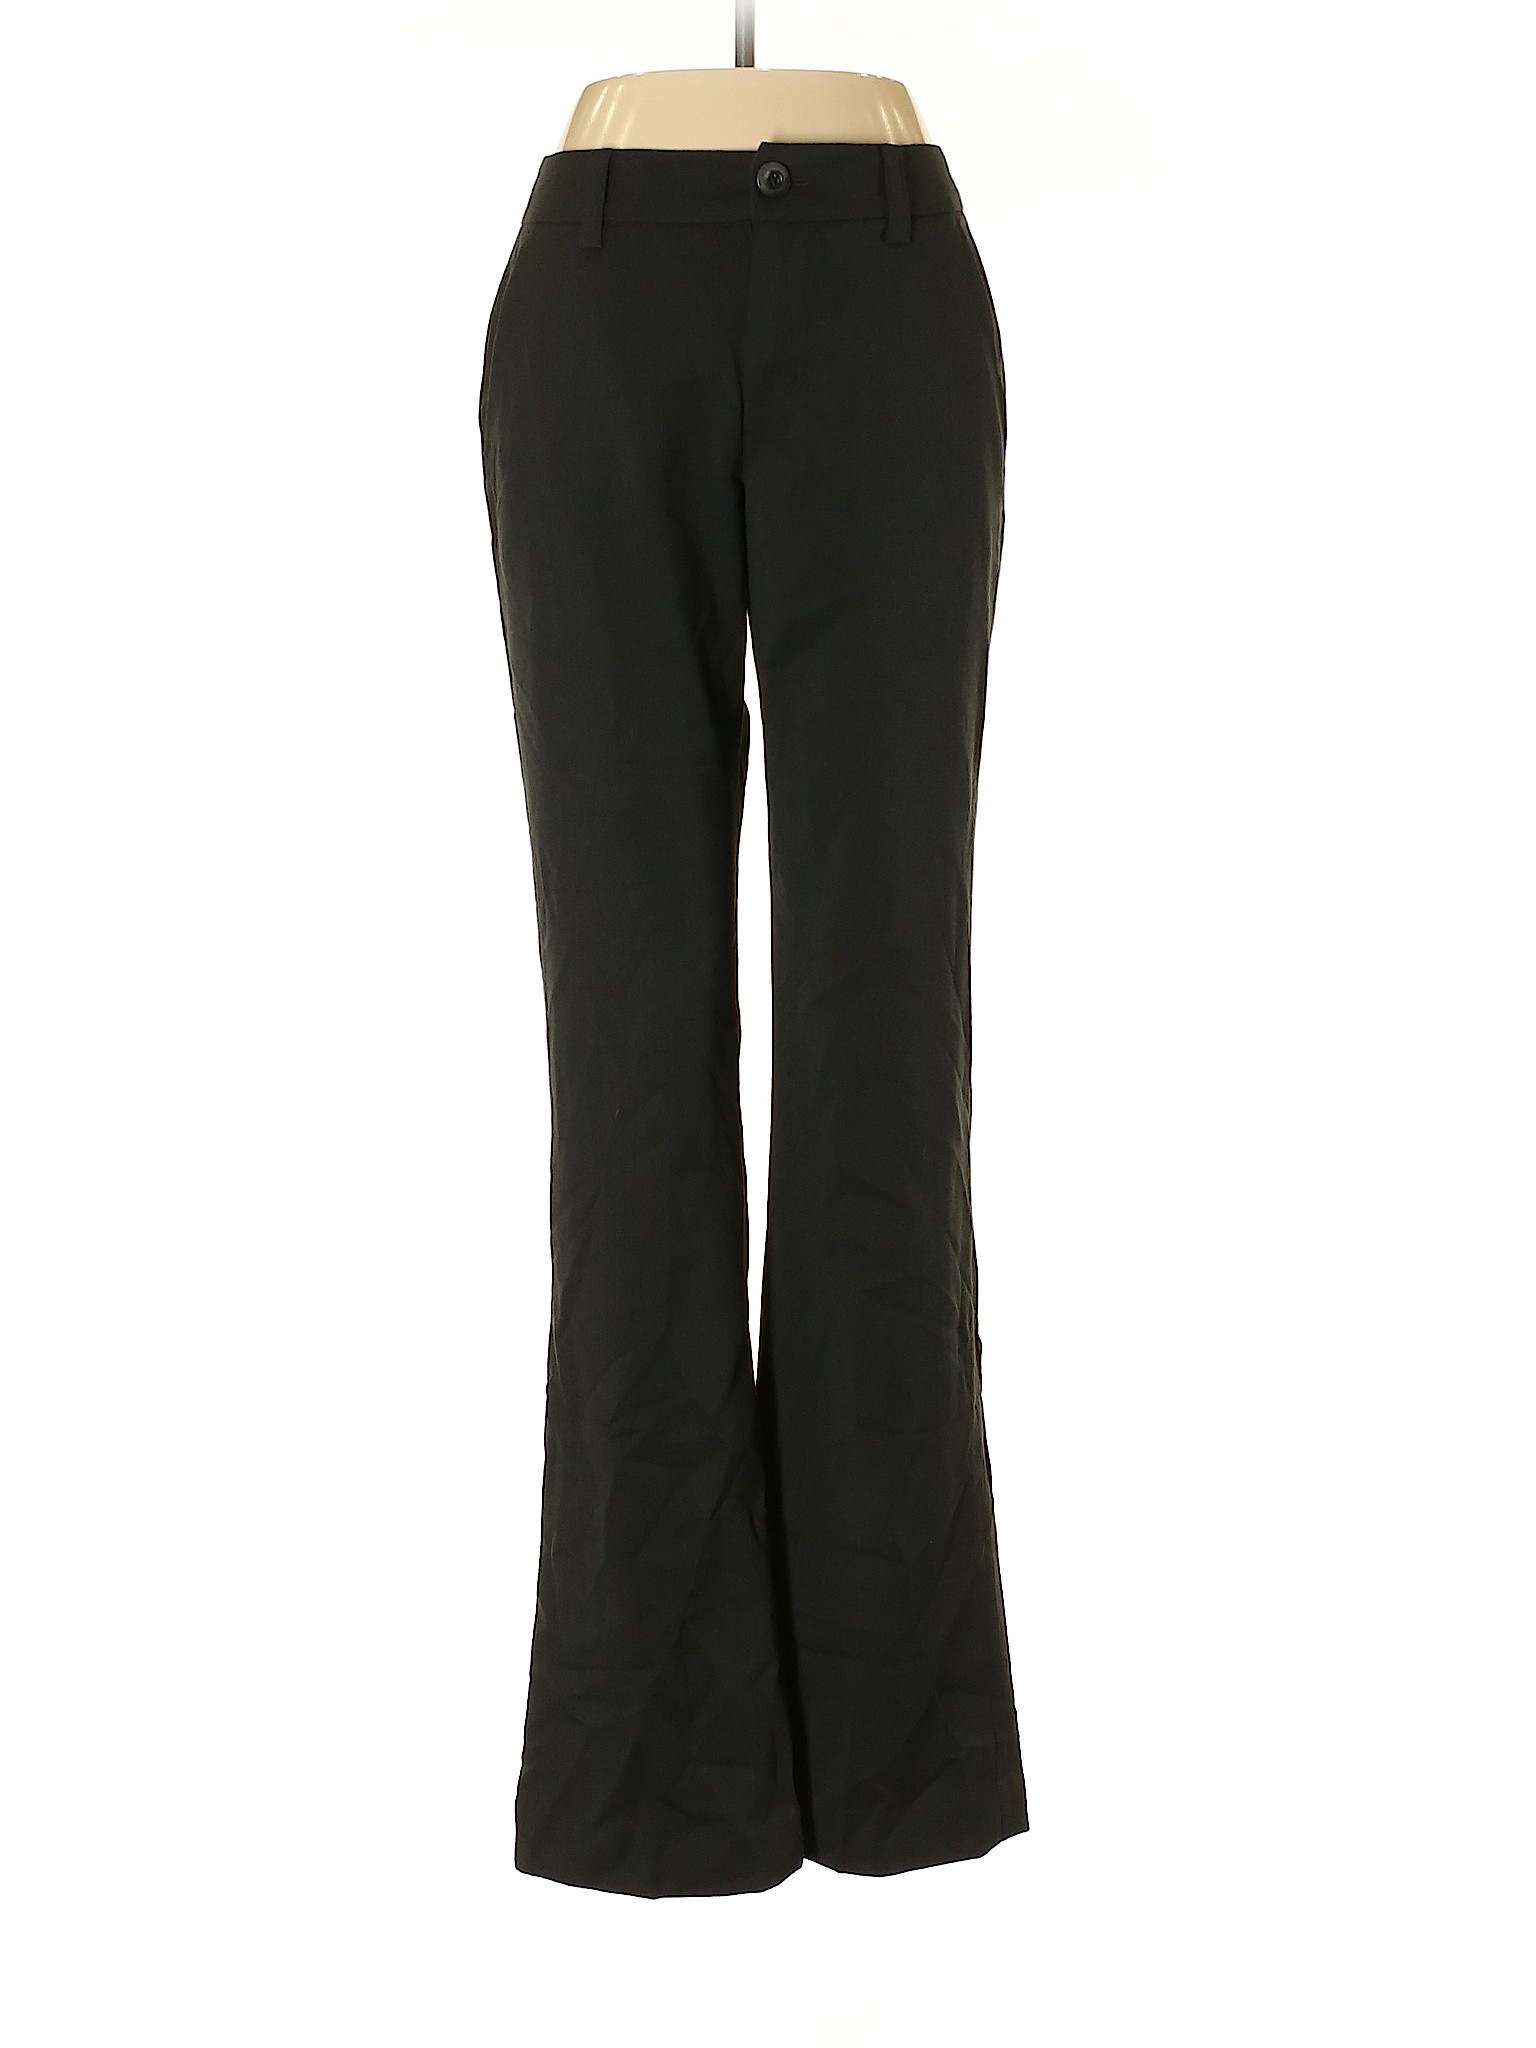 CAbi Solid Black Dress Pants Size 6 - 81% off | thredUP